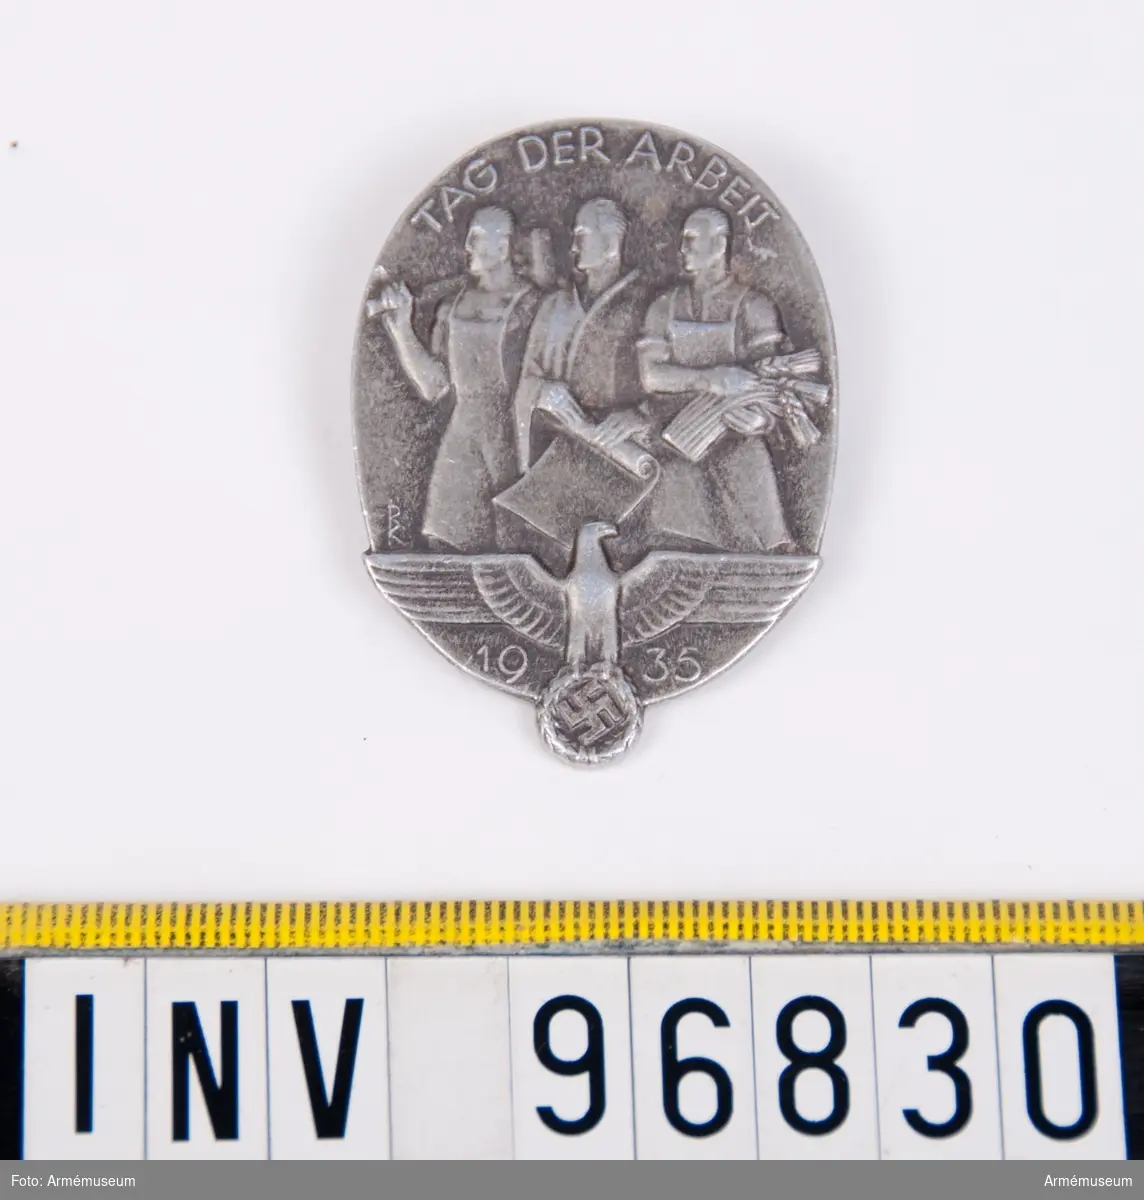 Propagandamärke i metall smyckat med motiv föreställande tre arbetare och den tyska örnen.